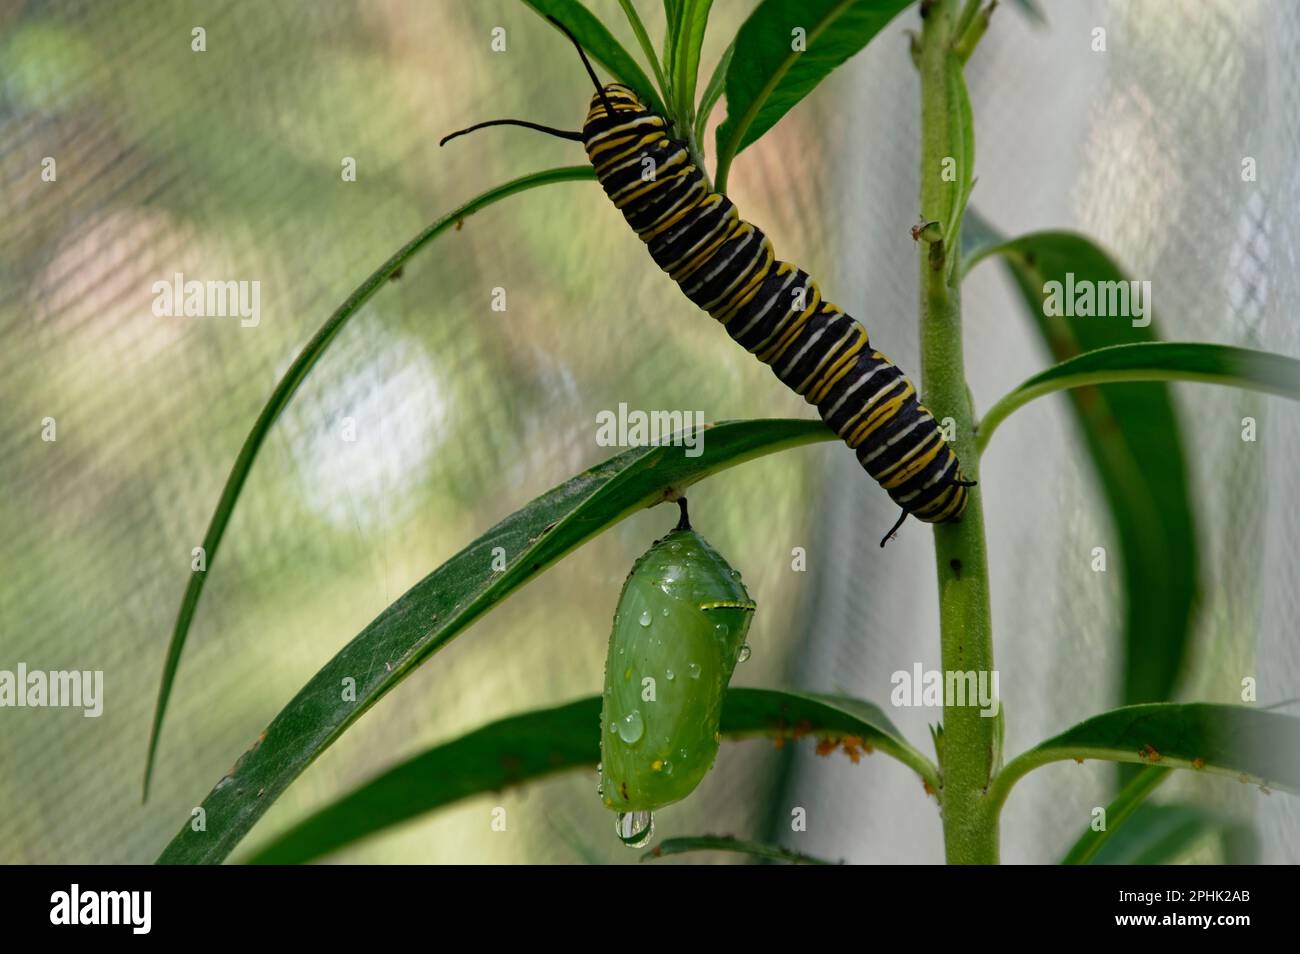 Zwei Phasen des Lebenszyklus des Monarchen-Schmetterlings, eine Raupe und eine Chrysalis. Stockfoto